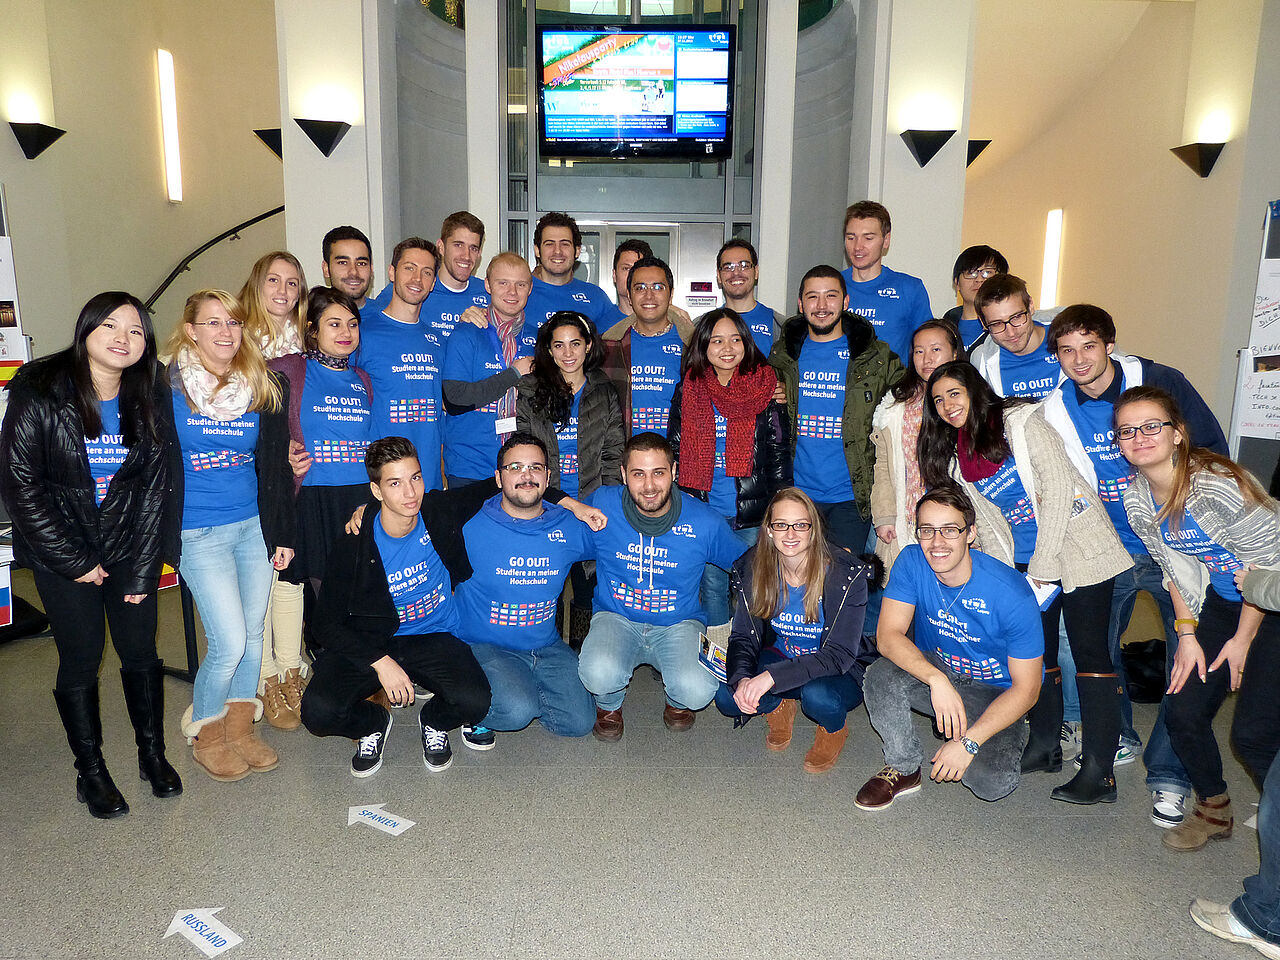 Gruppenfoto der Austauschstudierenden in blauen GO OUT! T-Shirts